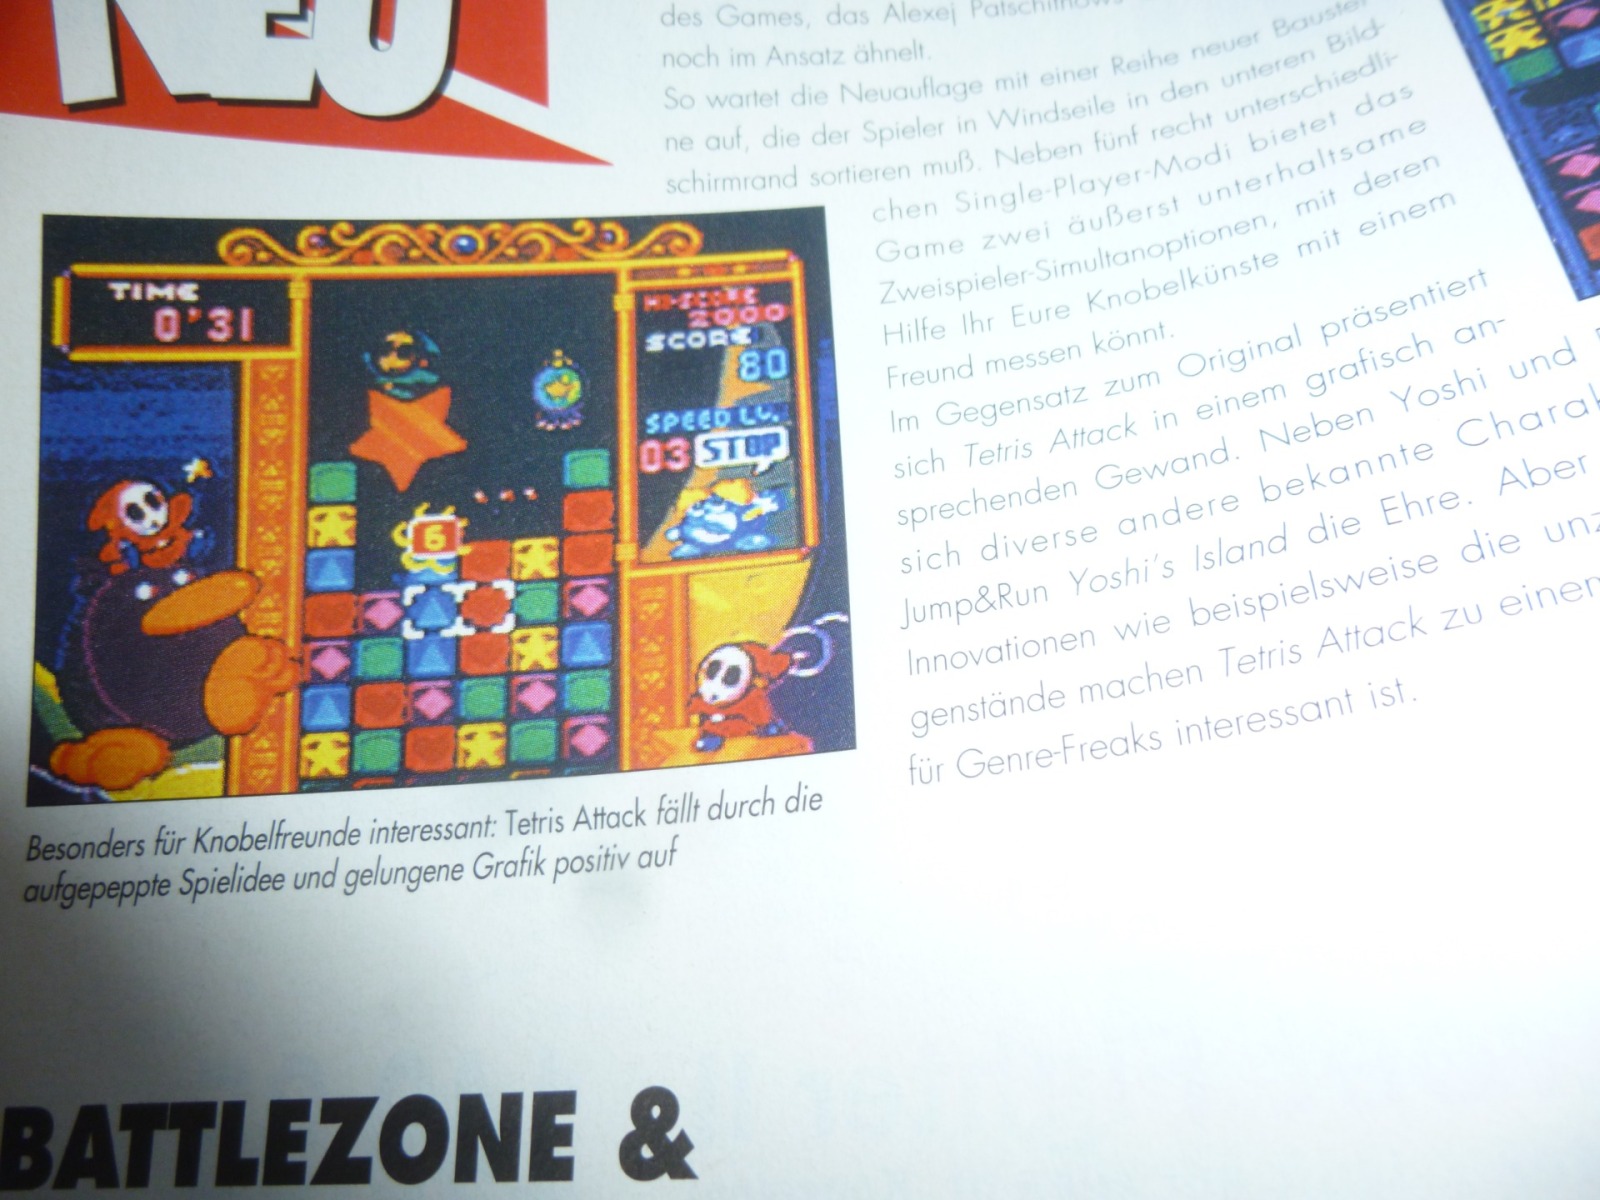 TOTAL Das unabhängige Magazin - 100% Nintendo - Ausgabe 10/96 1996 7